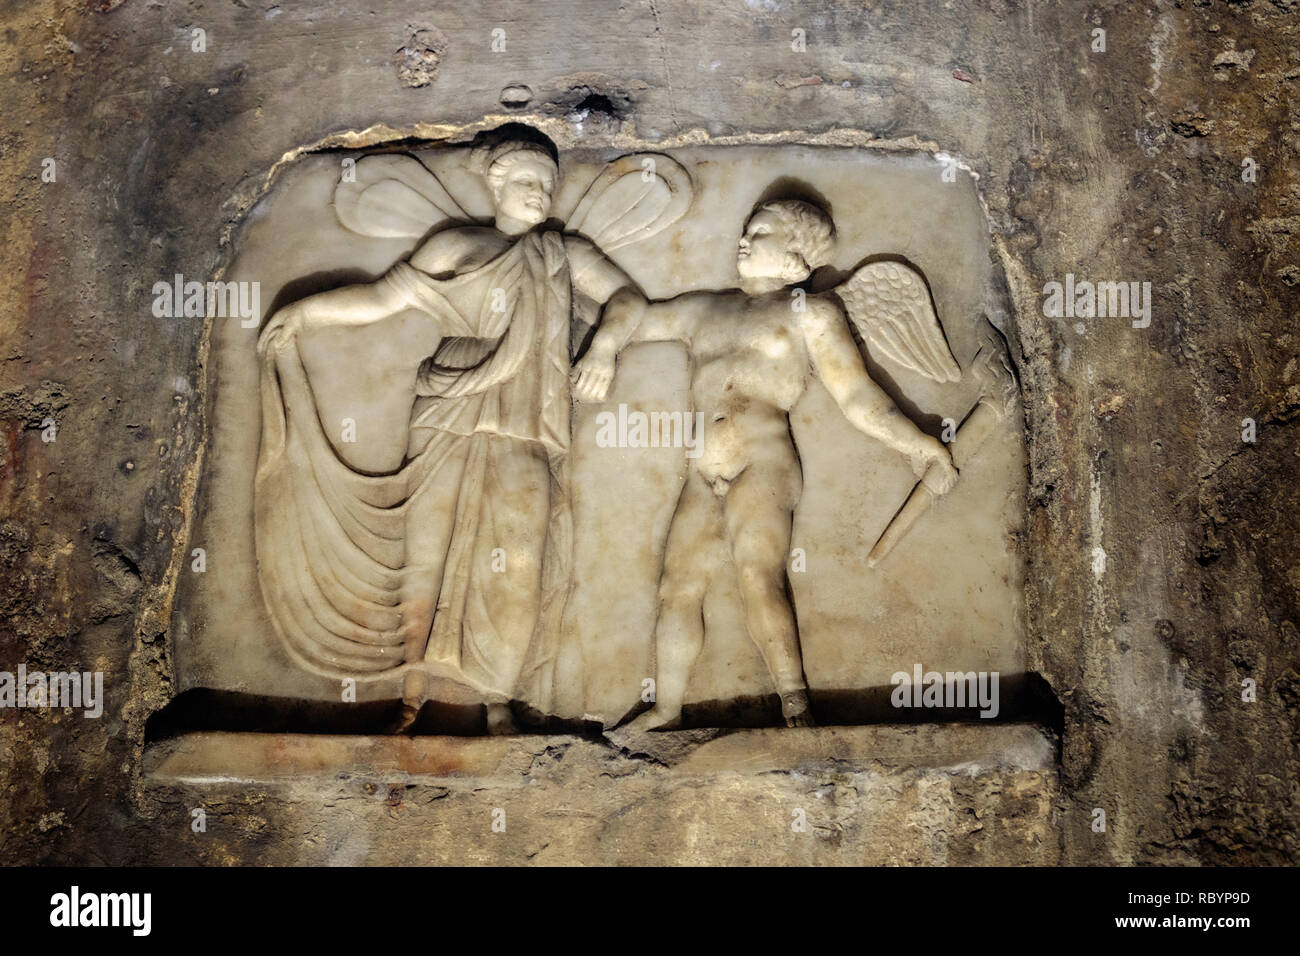 Das mithraeum von Capua geht zurück bis in die Antike und ist einer der wichtigsten. Auf seiner Attraktionen ist ein Flachrelief von Amor und Psyche. Stockfoto